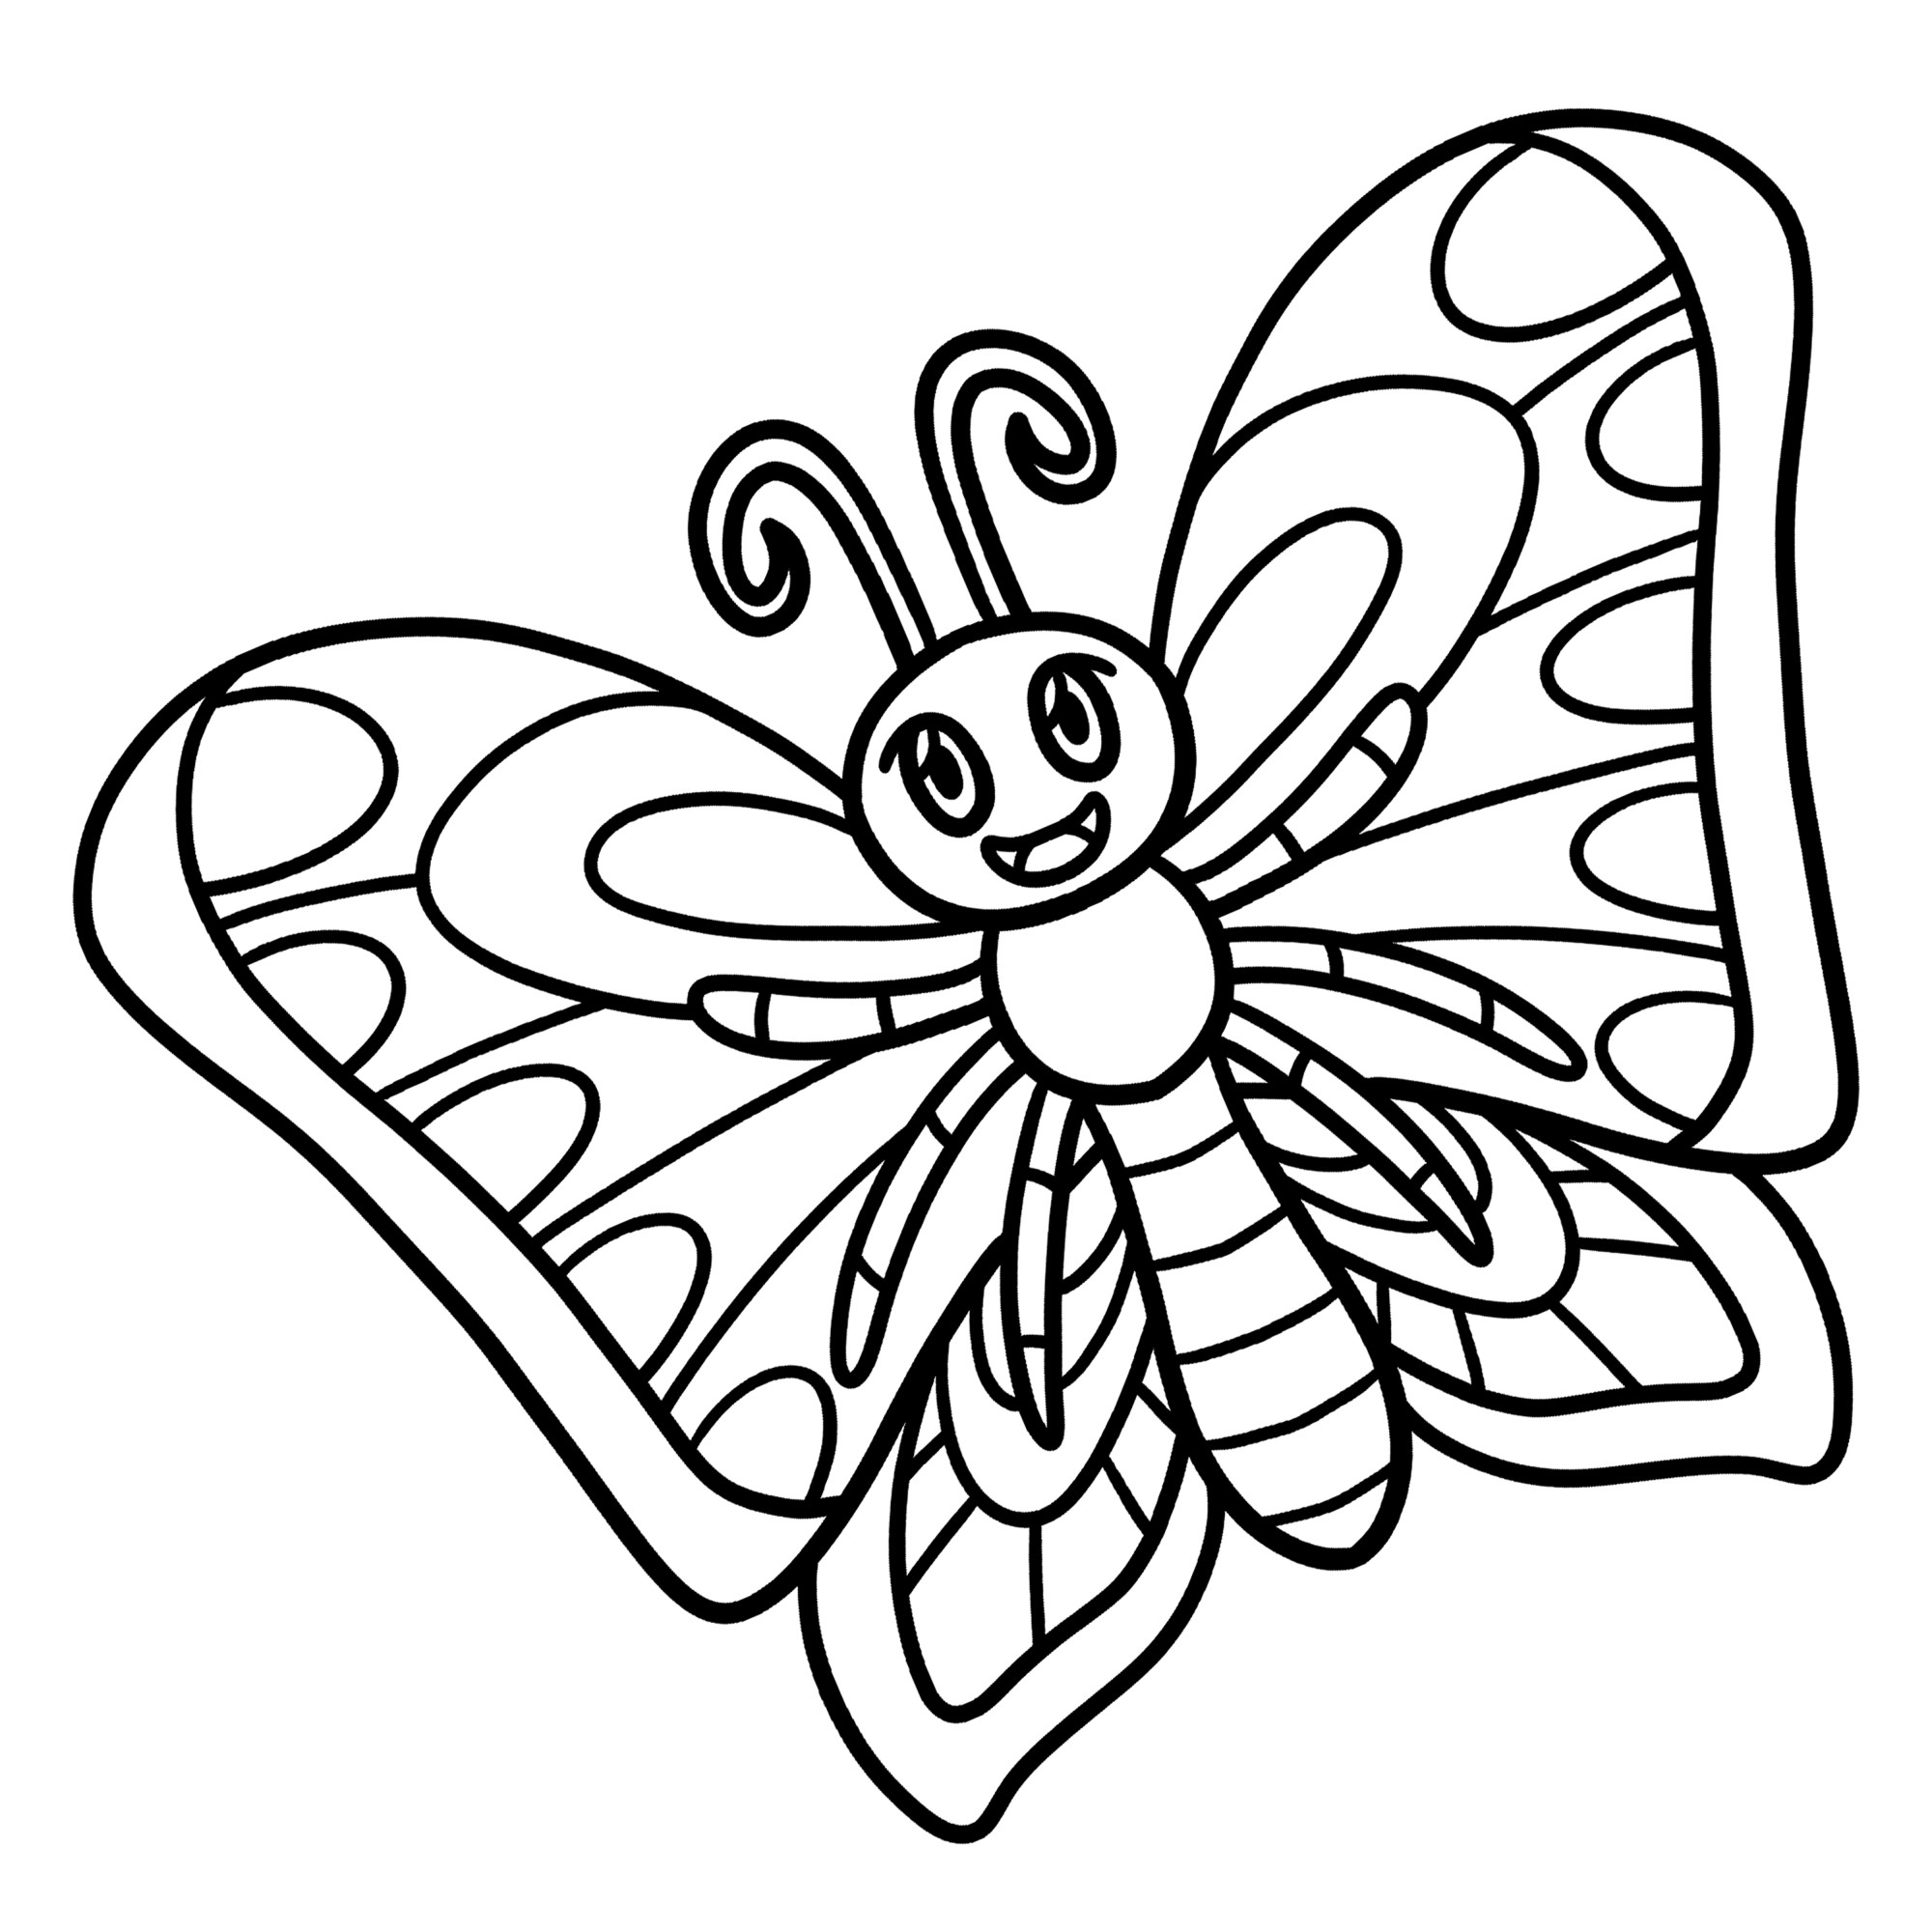 Раскраска для детей: загадочная мультяшная бабочка